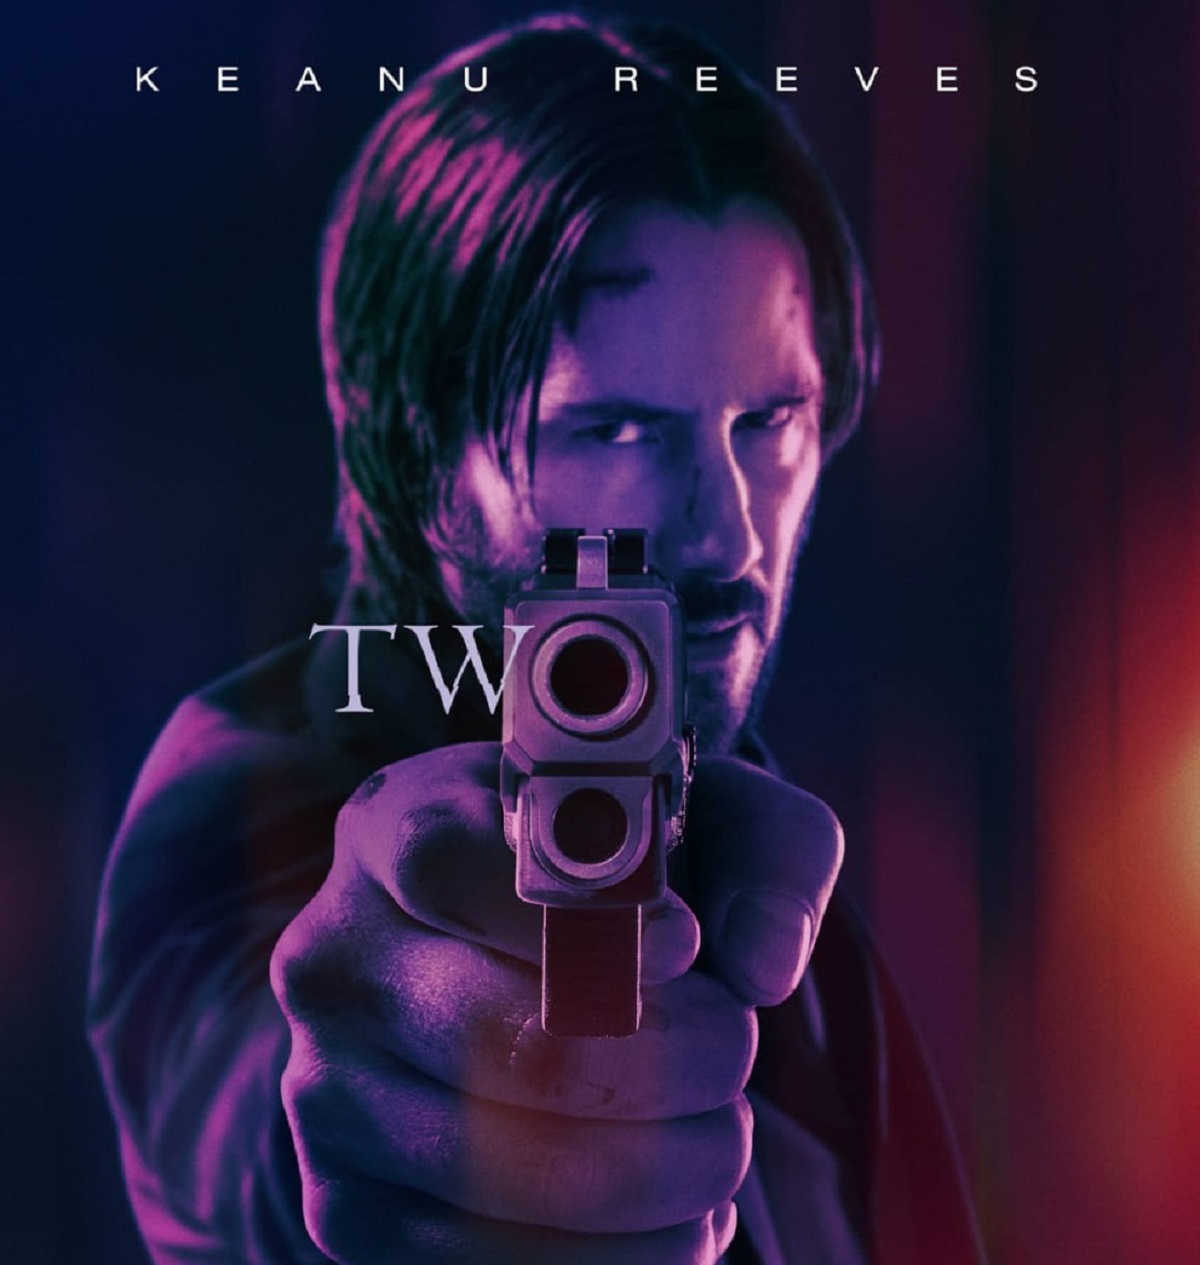 Sinopsis John Wick 2 Tayang di TV Hari Ini, Keanu Reeves Dijebak Bos Mafia  - ShowBiz